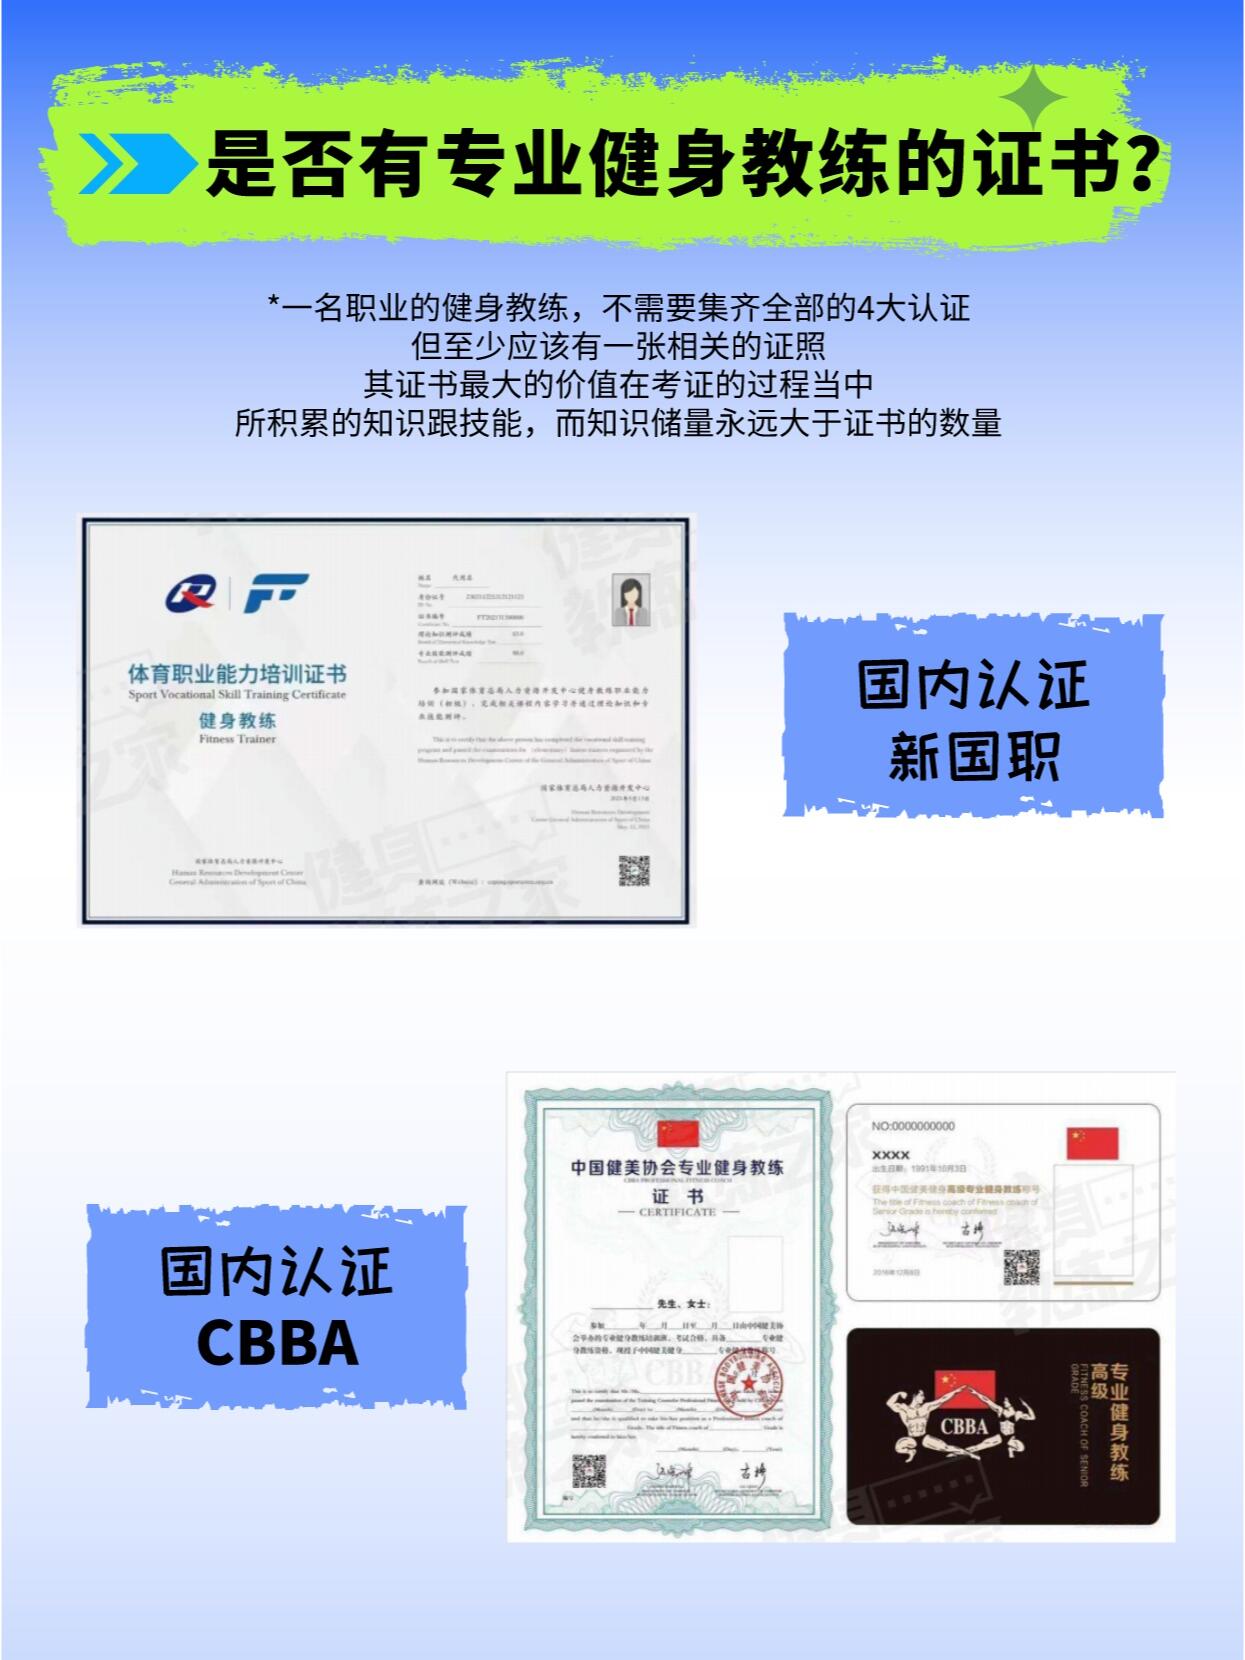 新国职证书和CBBA证书